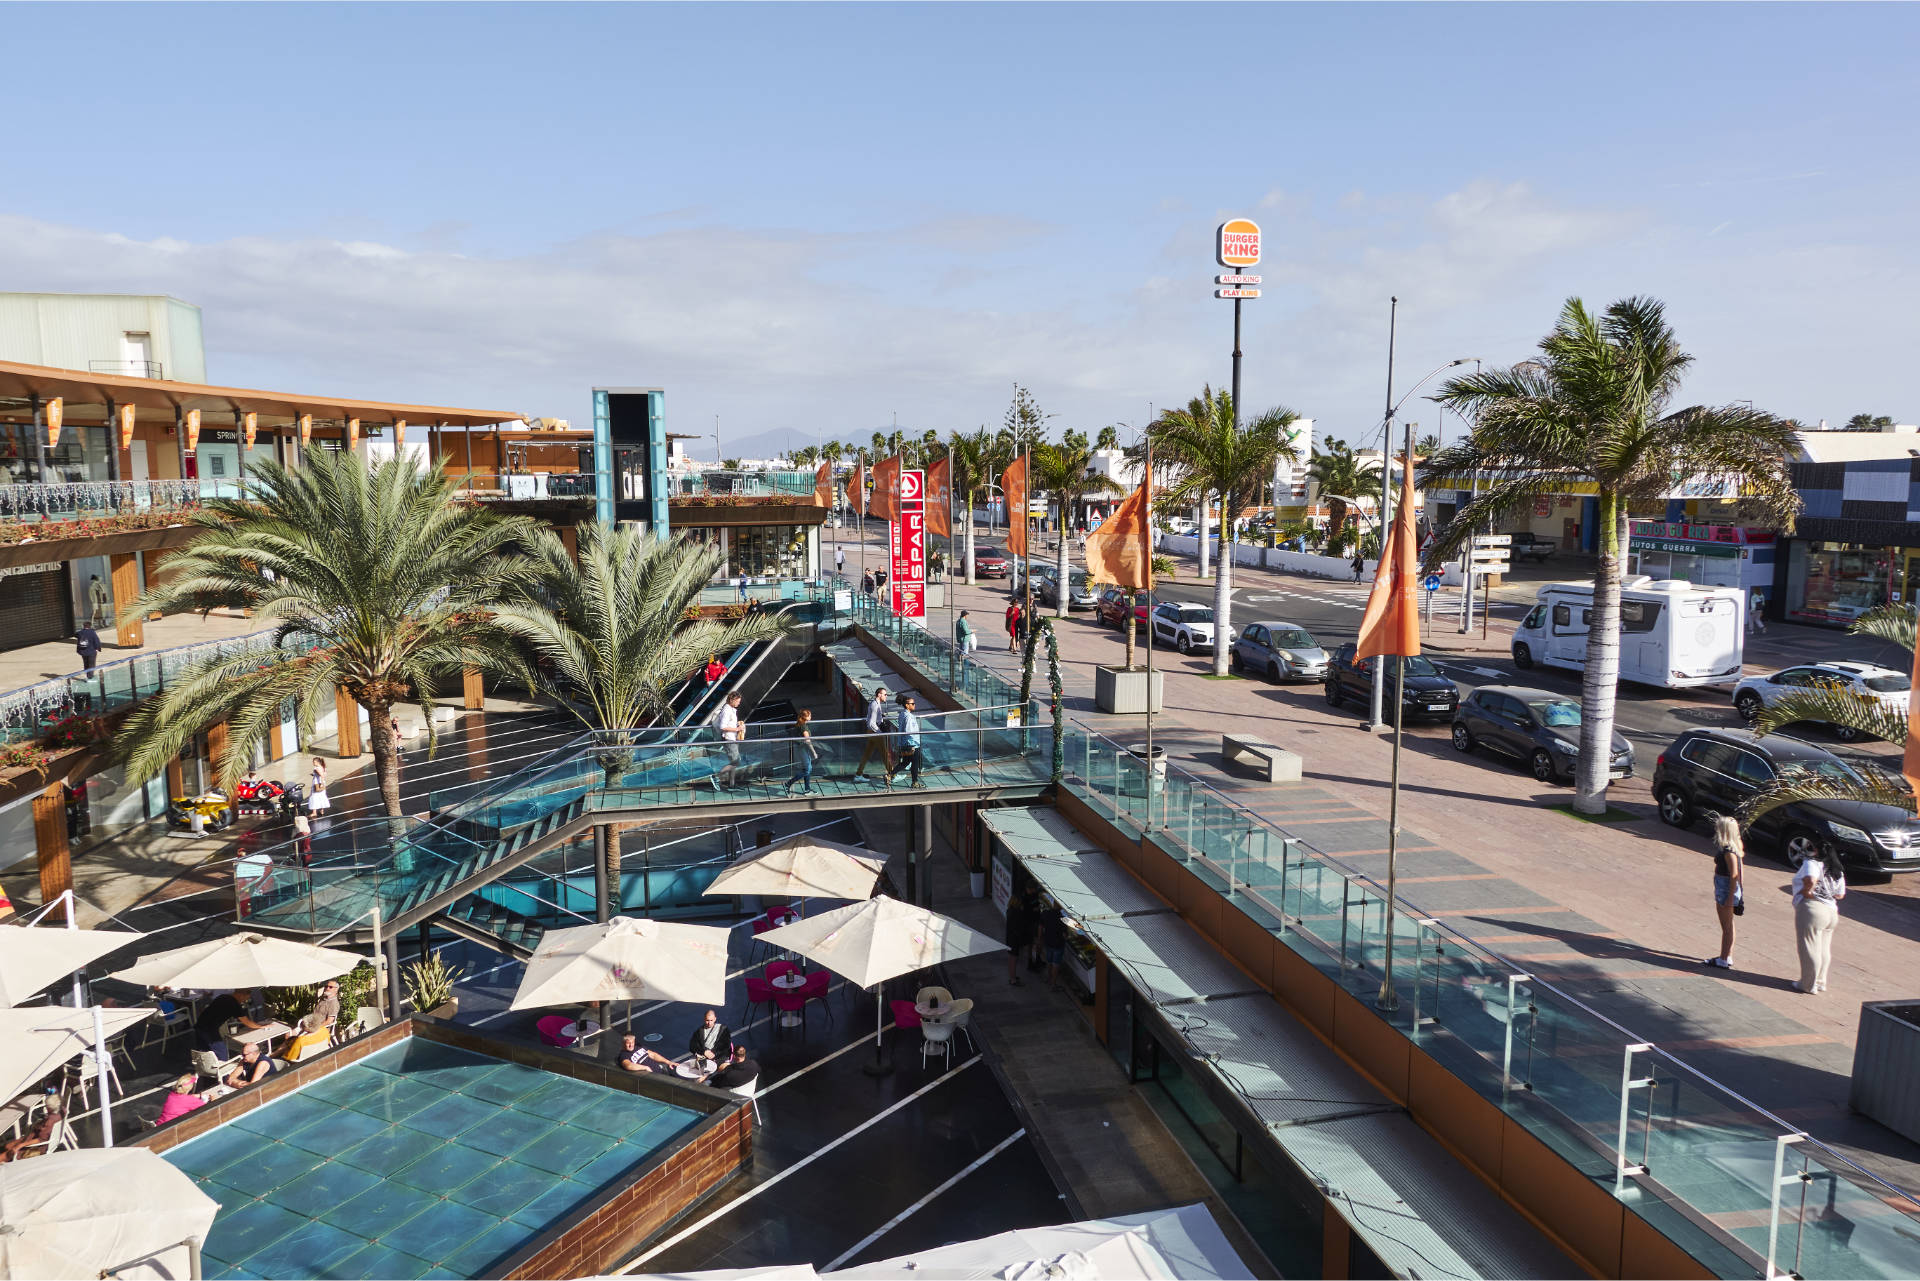 Las Palmeras Shopping Center Av. Ntra. Señora del Carmen Corralejo Fuerteventura.